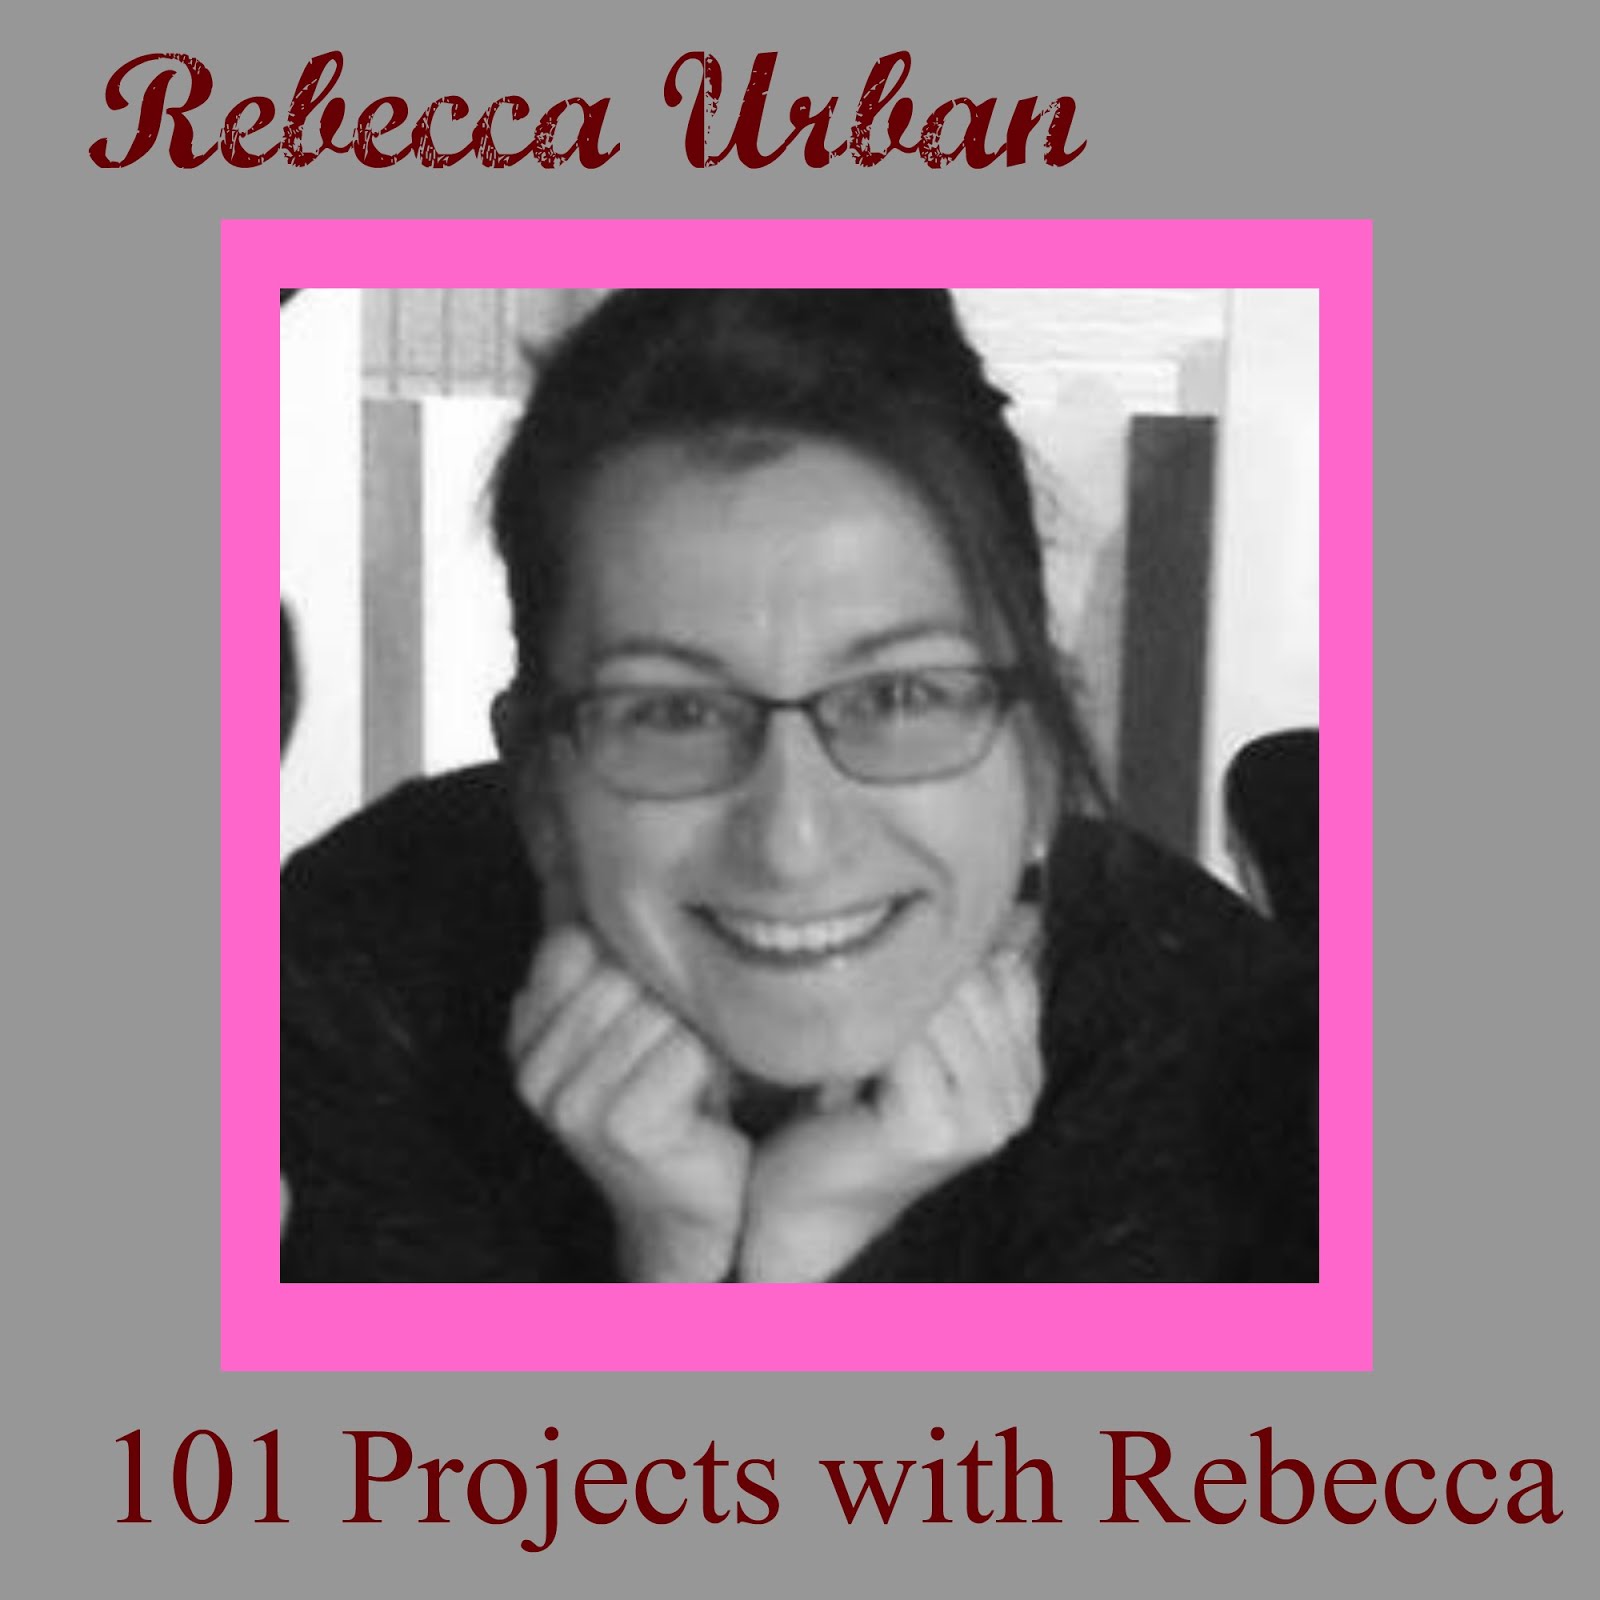 Rebecca Urban